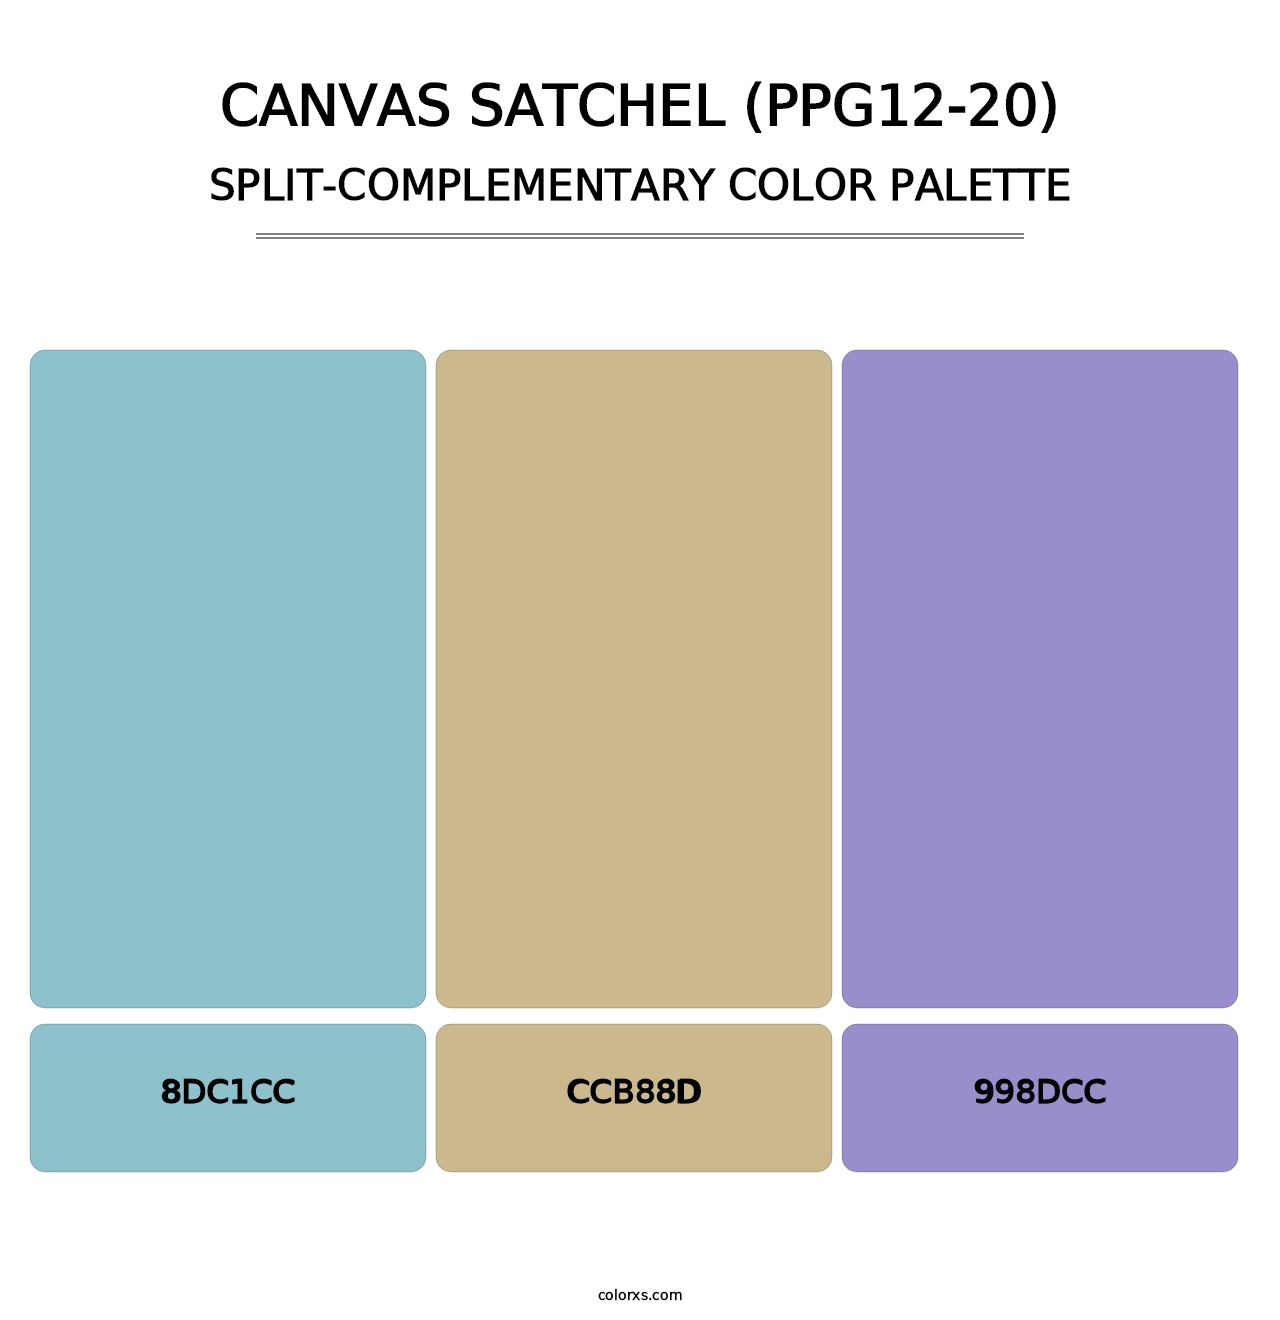 Canvas Satchel (PPG12-20) - Split-Complementary Color Palette